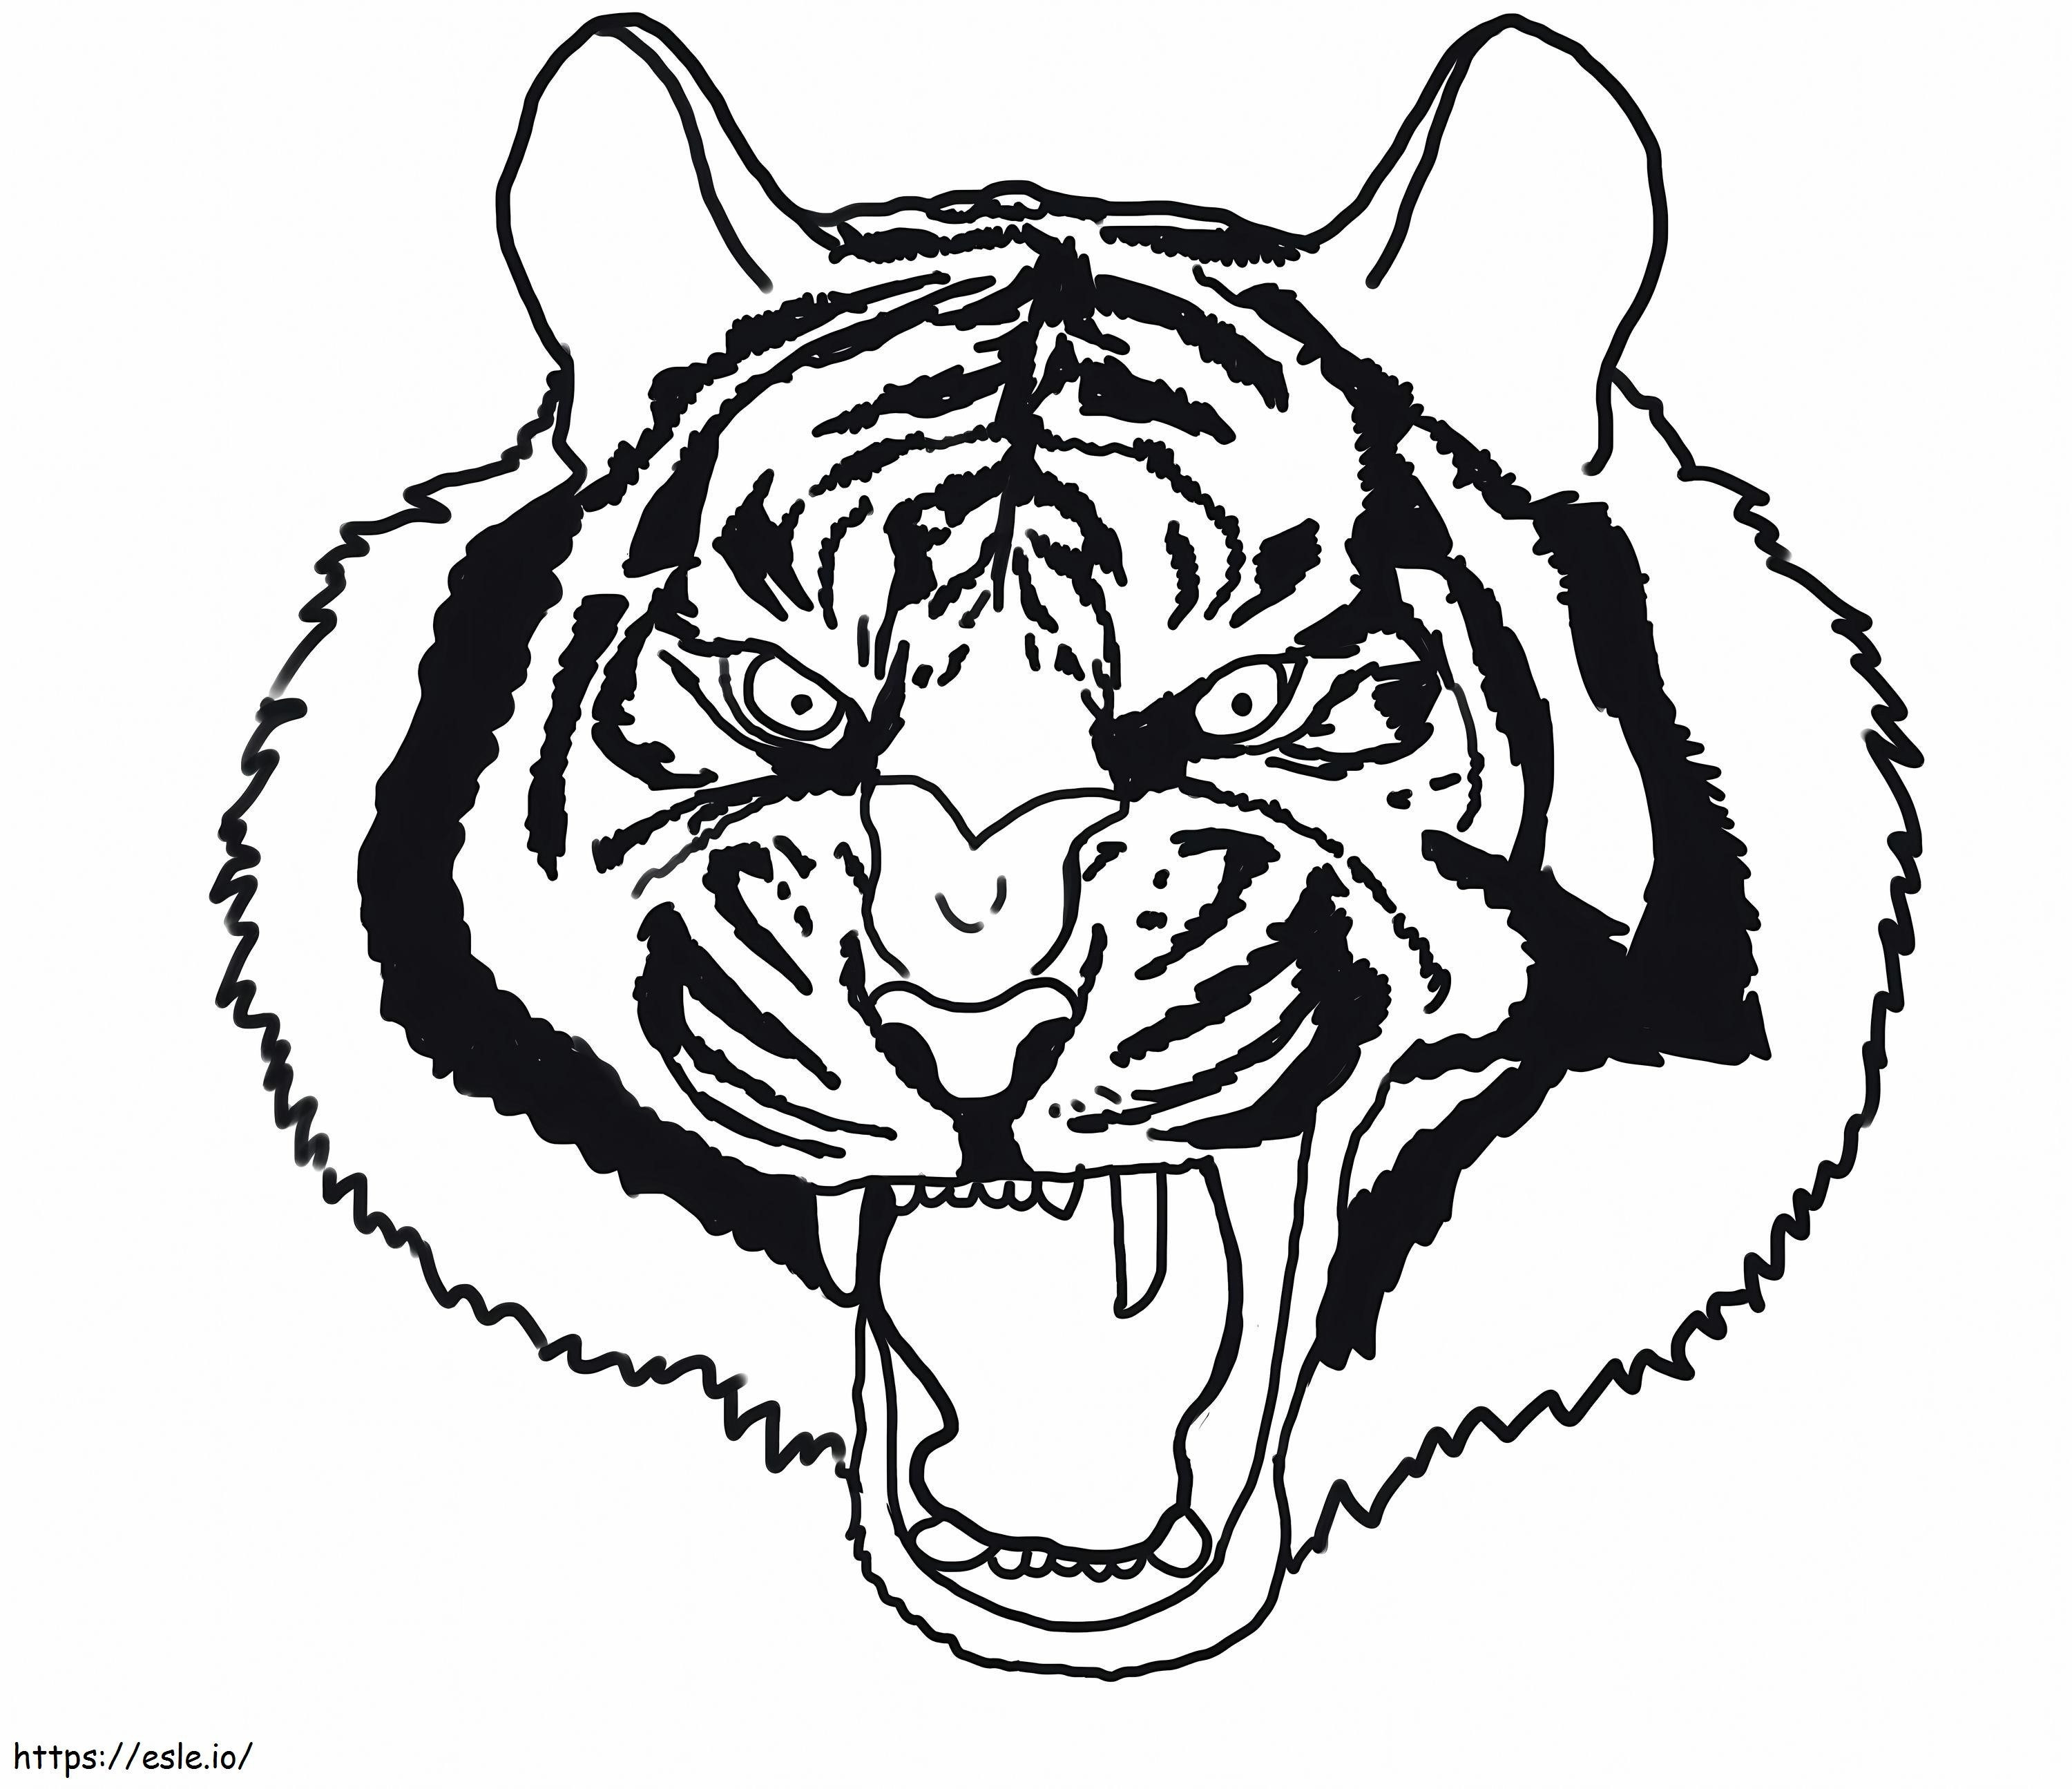 Gruseliger Tigerkopf ausmalbilder